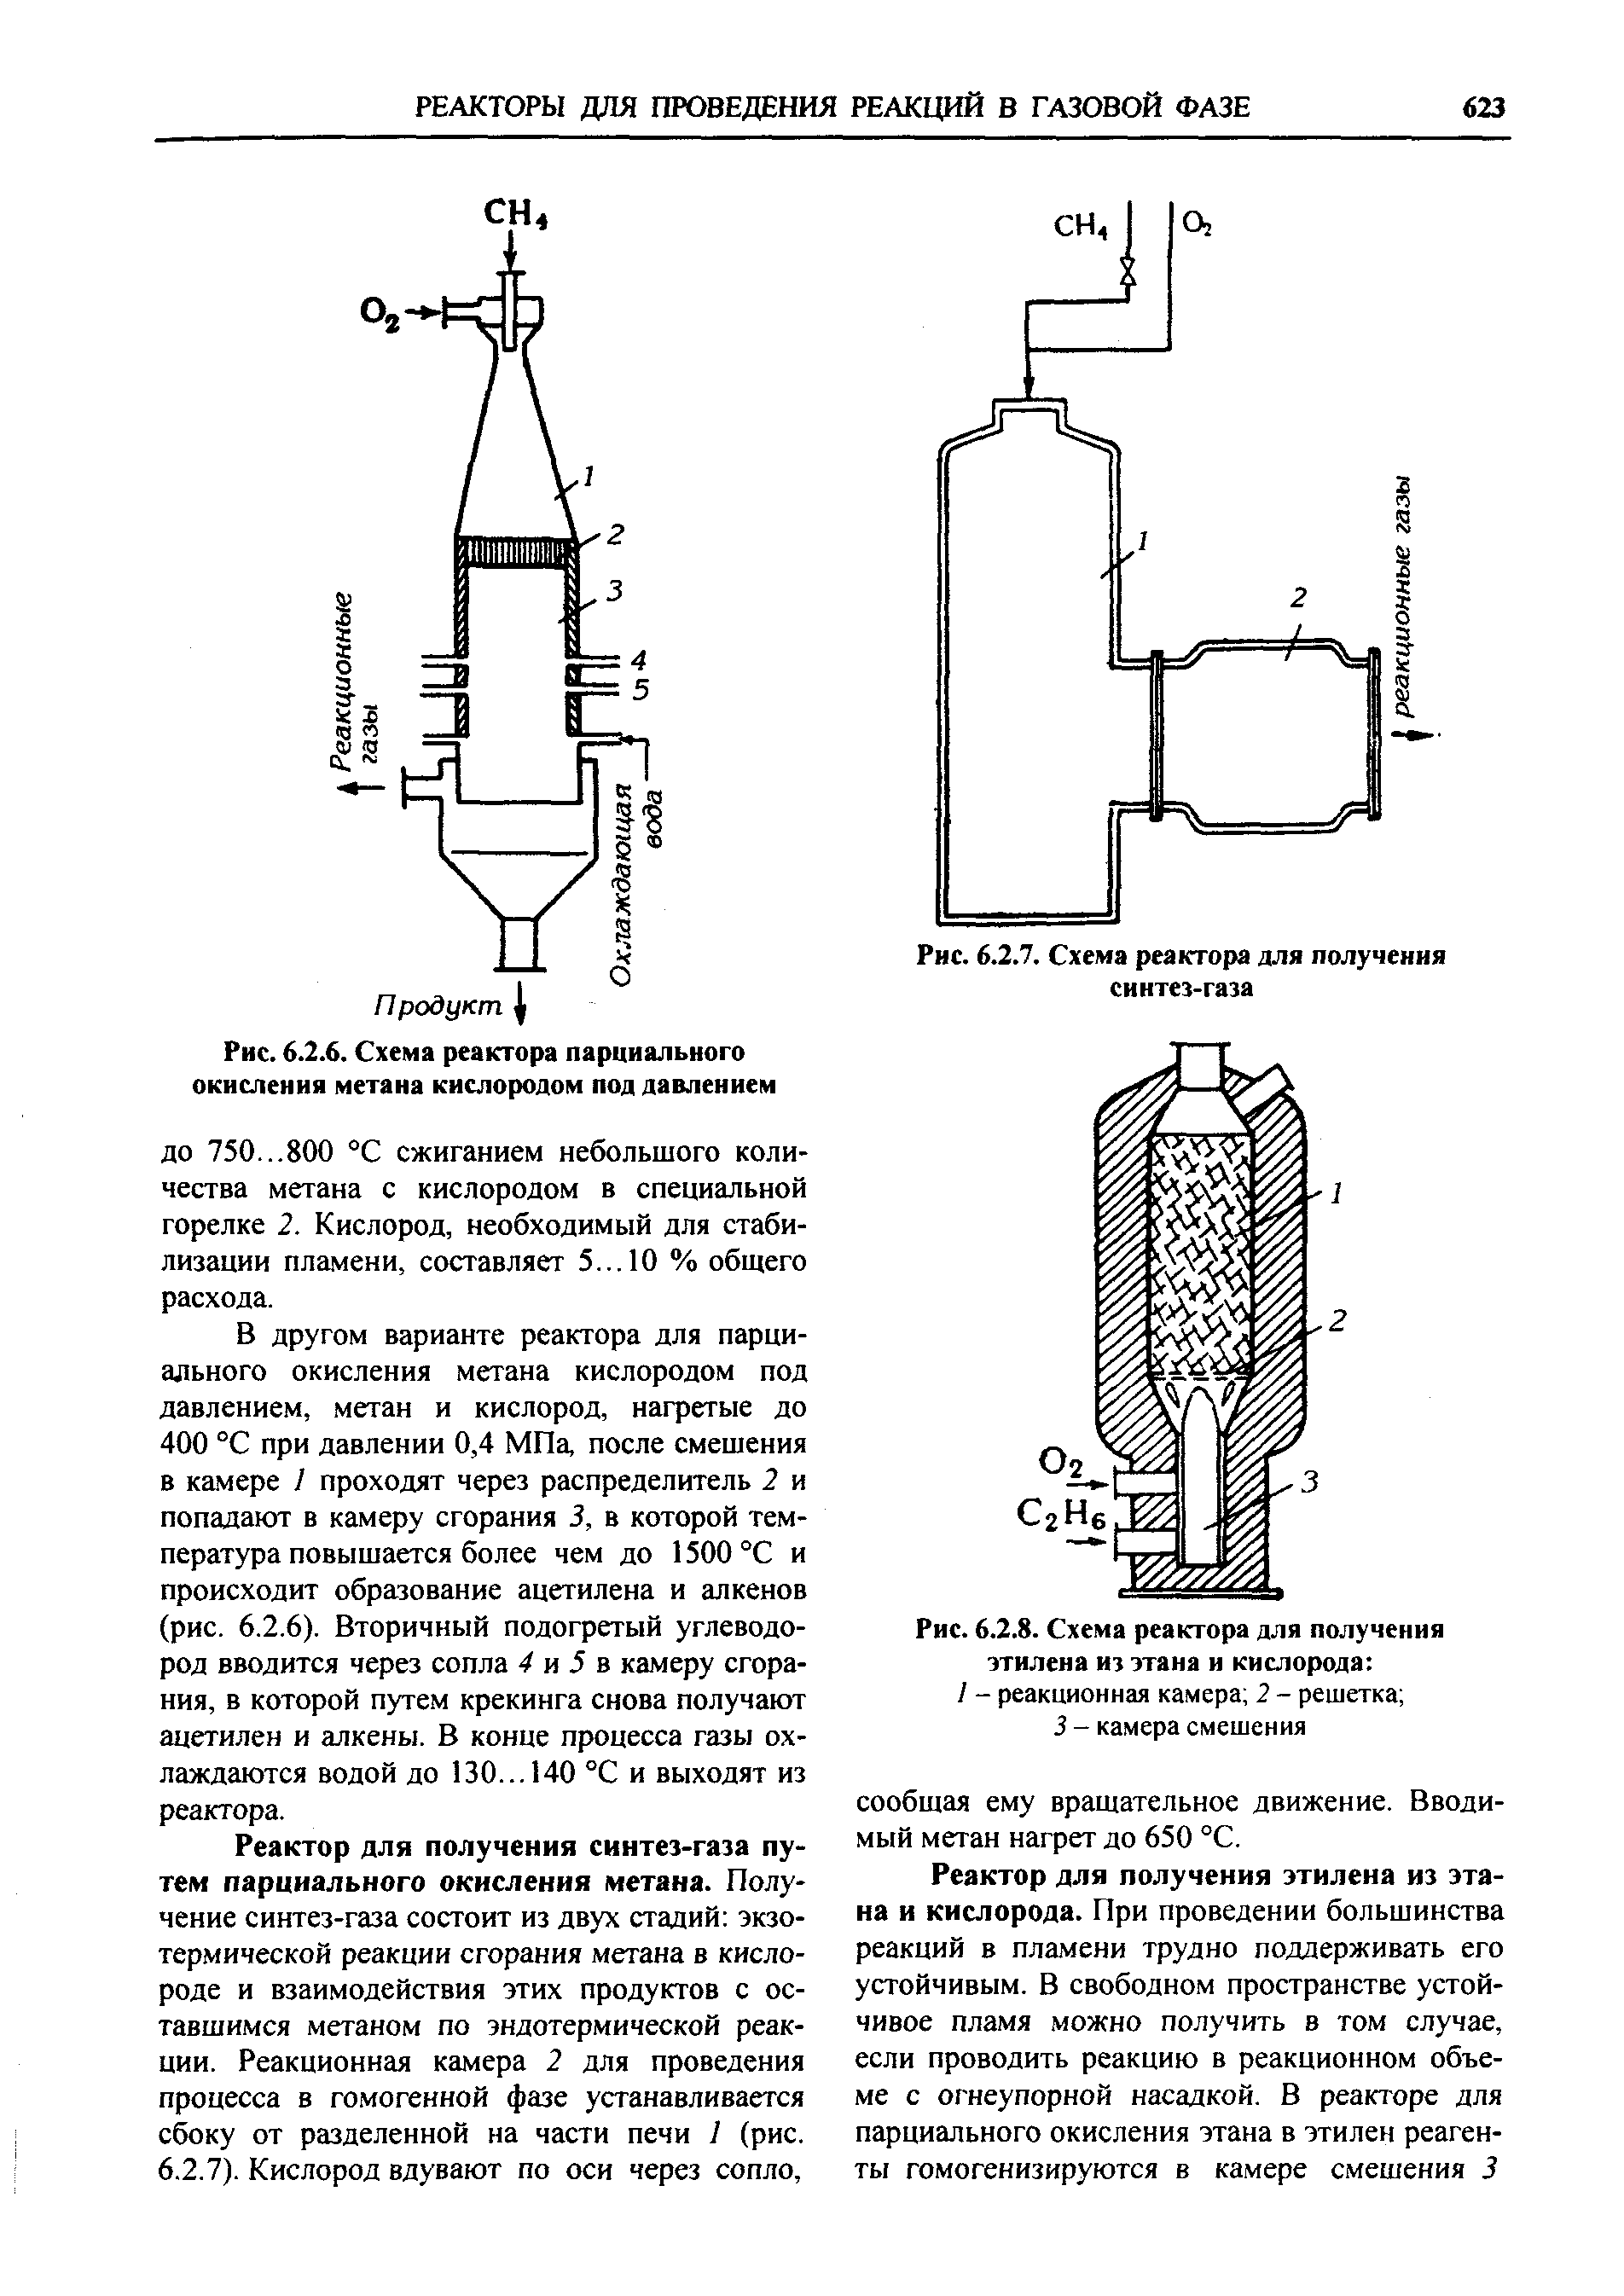 Рис. 6.2.8. Схема реактора для получения этилена из этана и кислорода 
